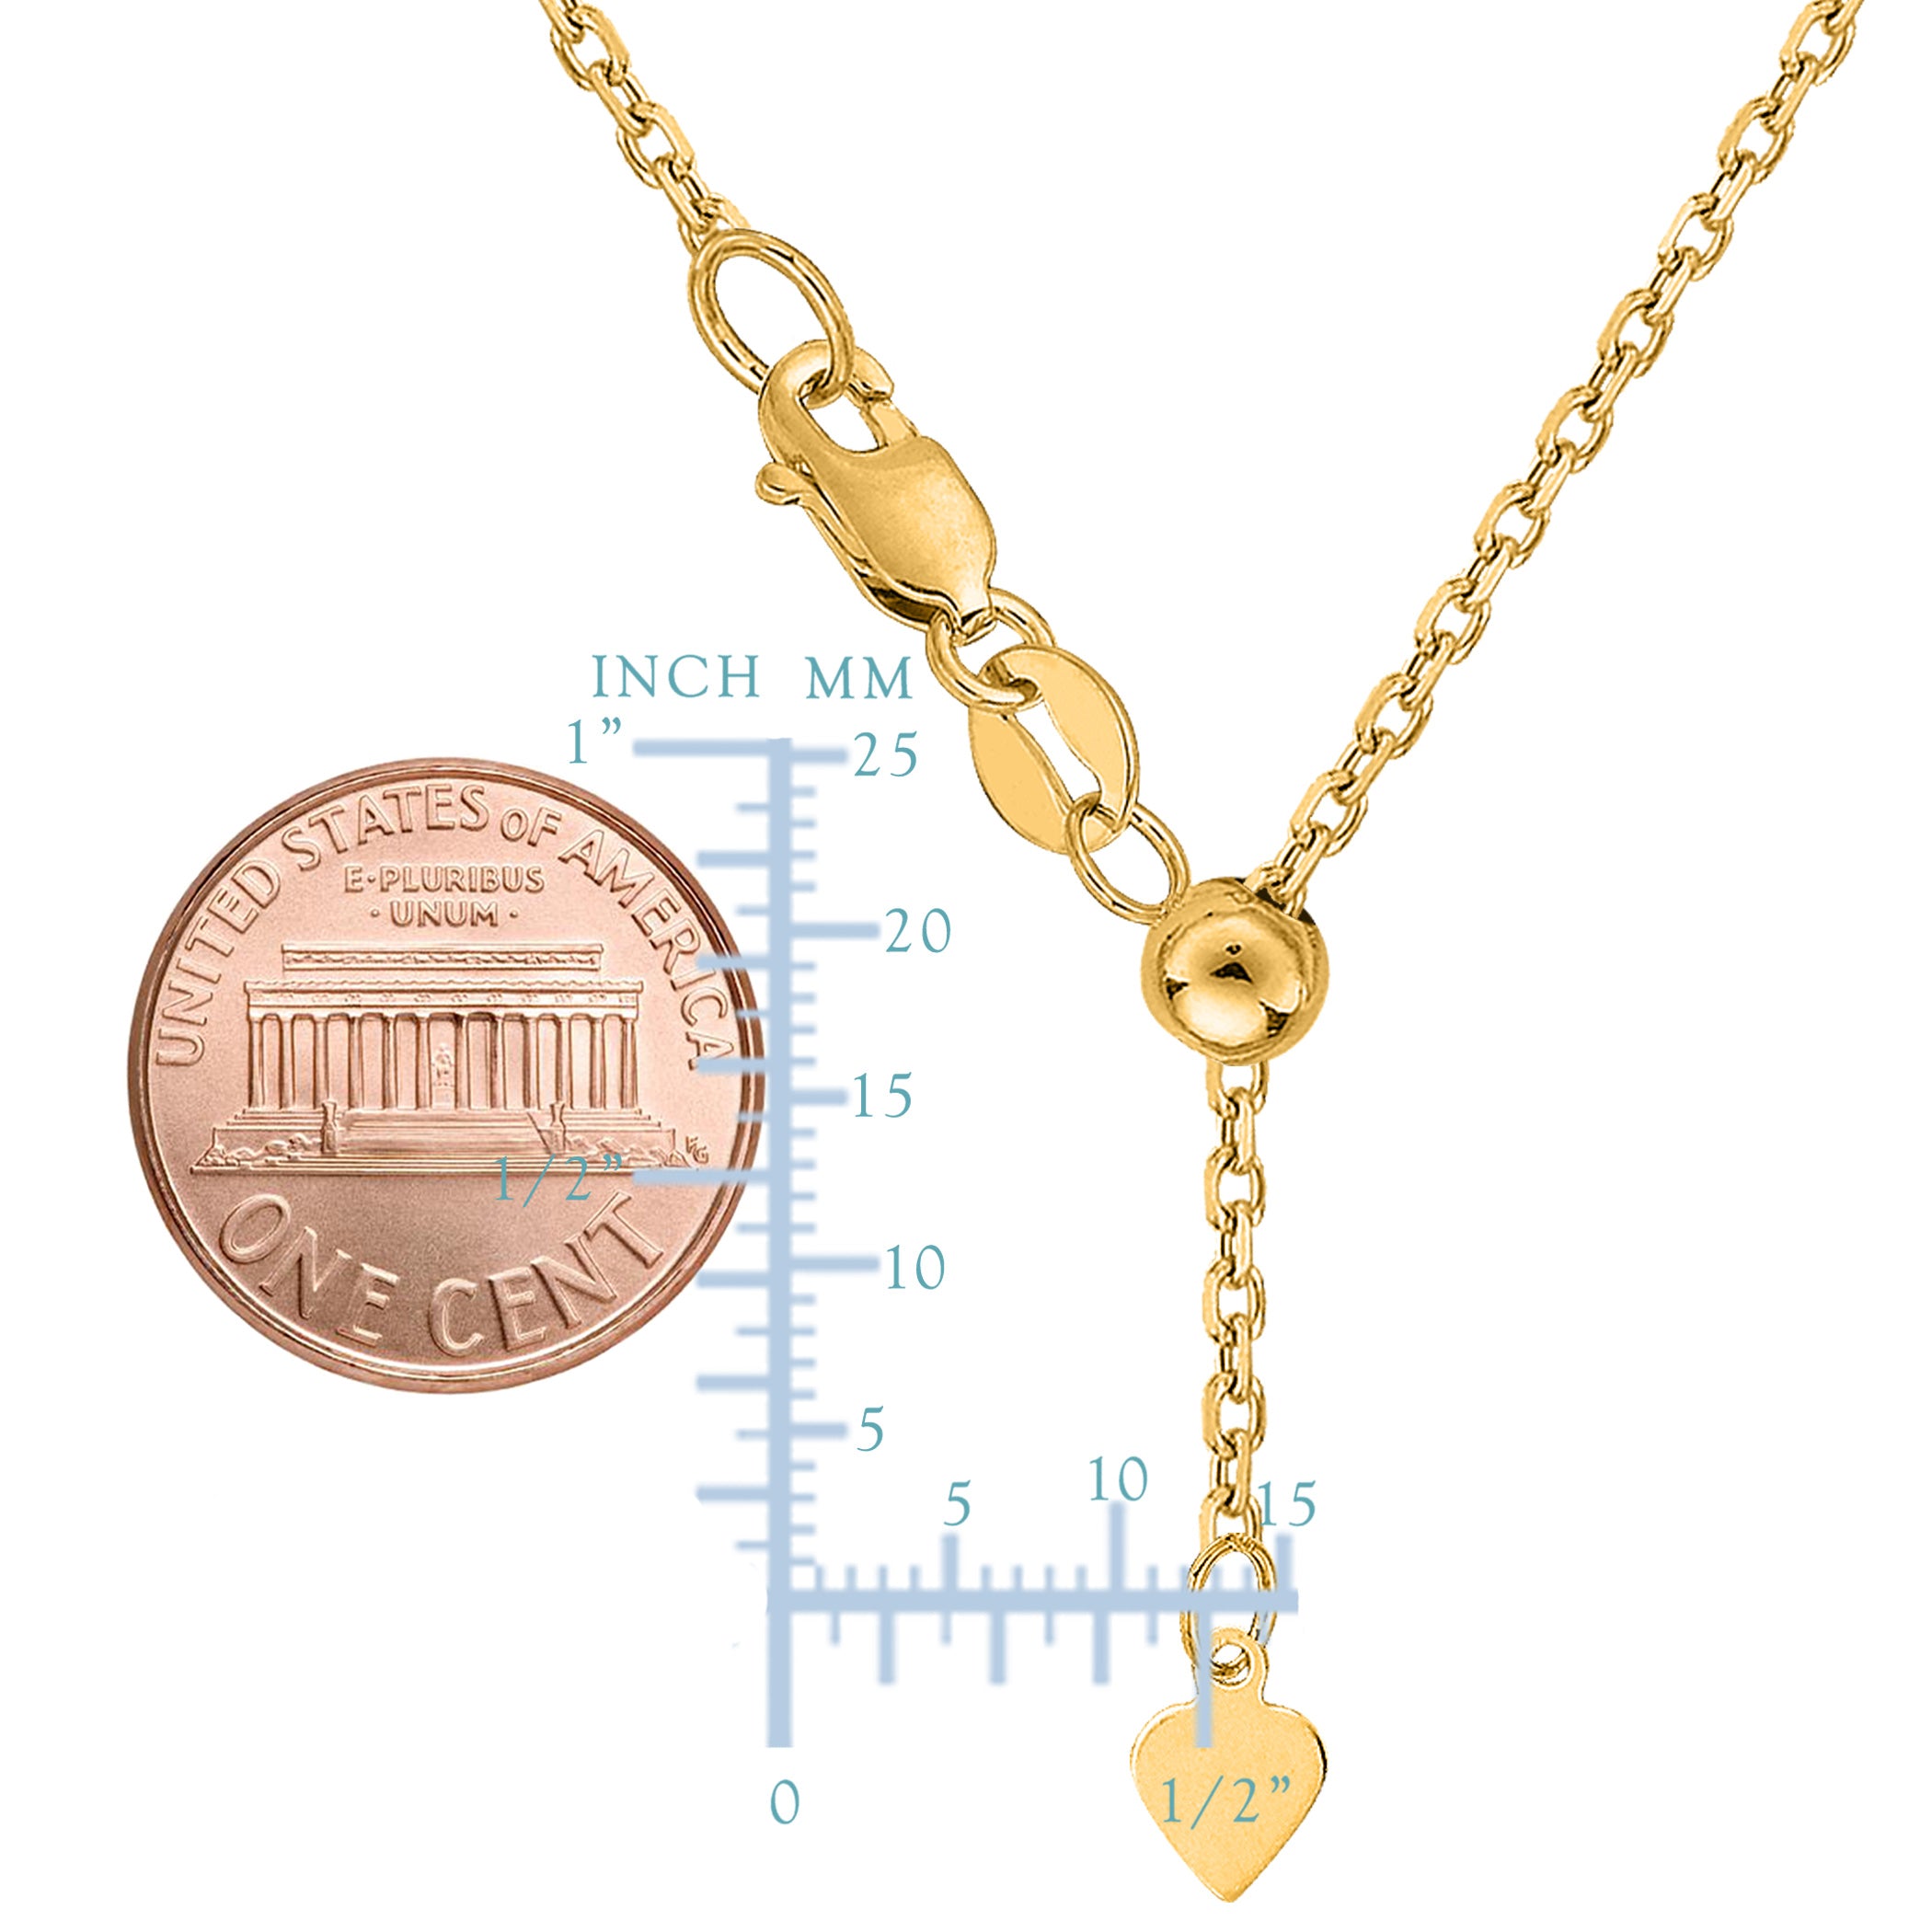 Collar de cadena tipo cable ajustable de oro amarillo de 14 k, 0,9 mm, 22 pulgadas, joyería fina de diseño para hombres y mujeres